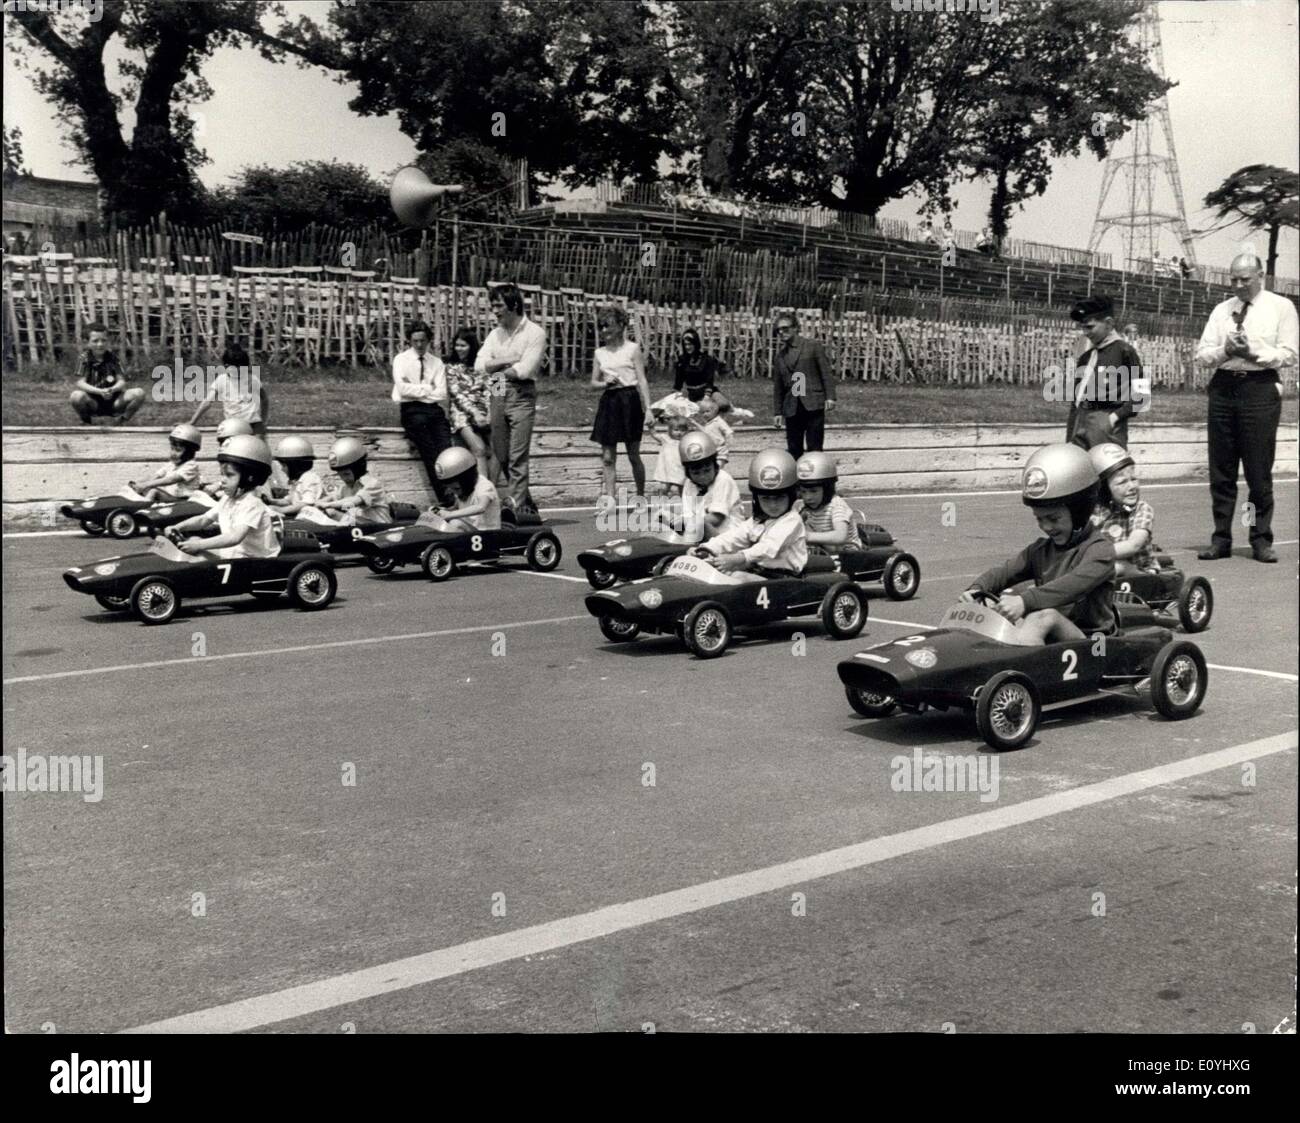 Juin 07, 1970 - Le Grand Prix Junior Rac''' La Race au Crystal Palace. : Britains's Les jeunes aspirants dirvers ont pris part aujourd'hui à l'ACFC ''Grand Prix Junior''. Les concurrents étaient à l'controlks de ''pedal-powered'' mini-voitures de course qu'ils ont fait un 75-yards dash sur une section du circuit de course automobile à Crystal Palace normalement utilisé par les pilotes de course les plus expérimentés Banque D'Images